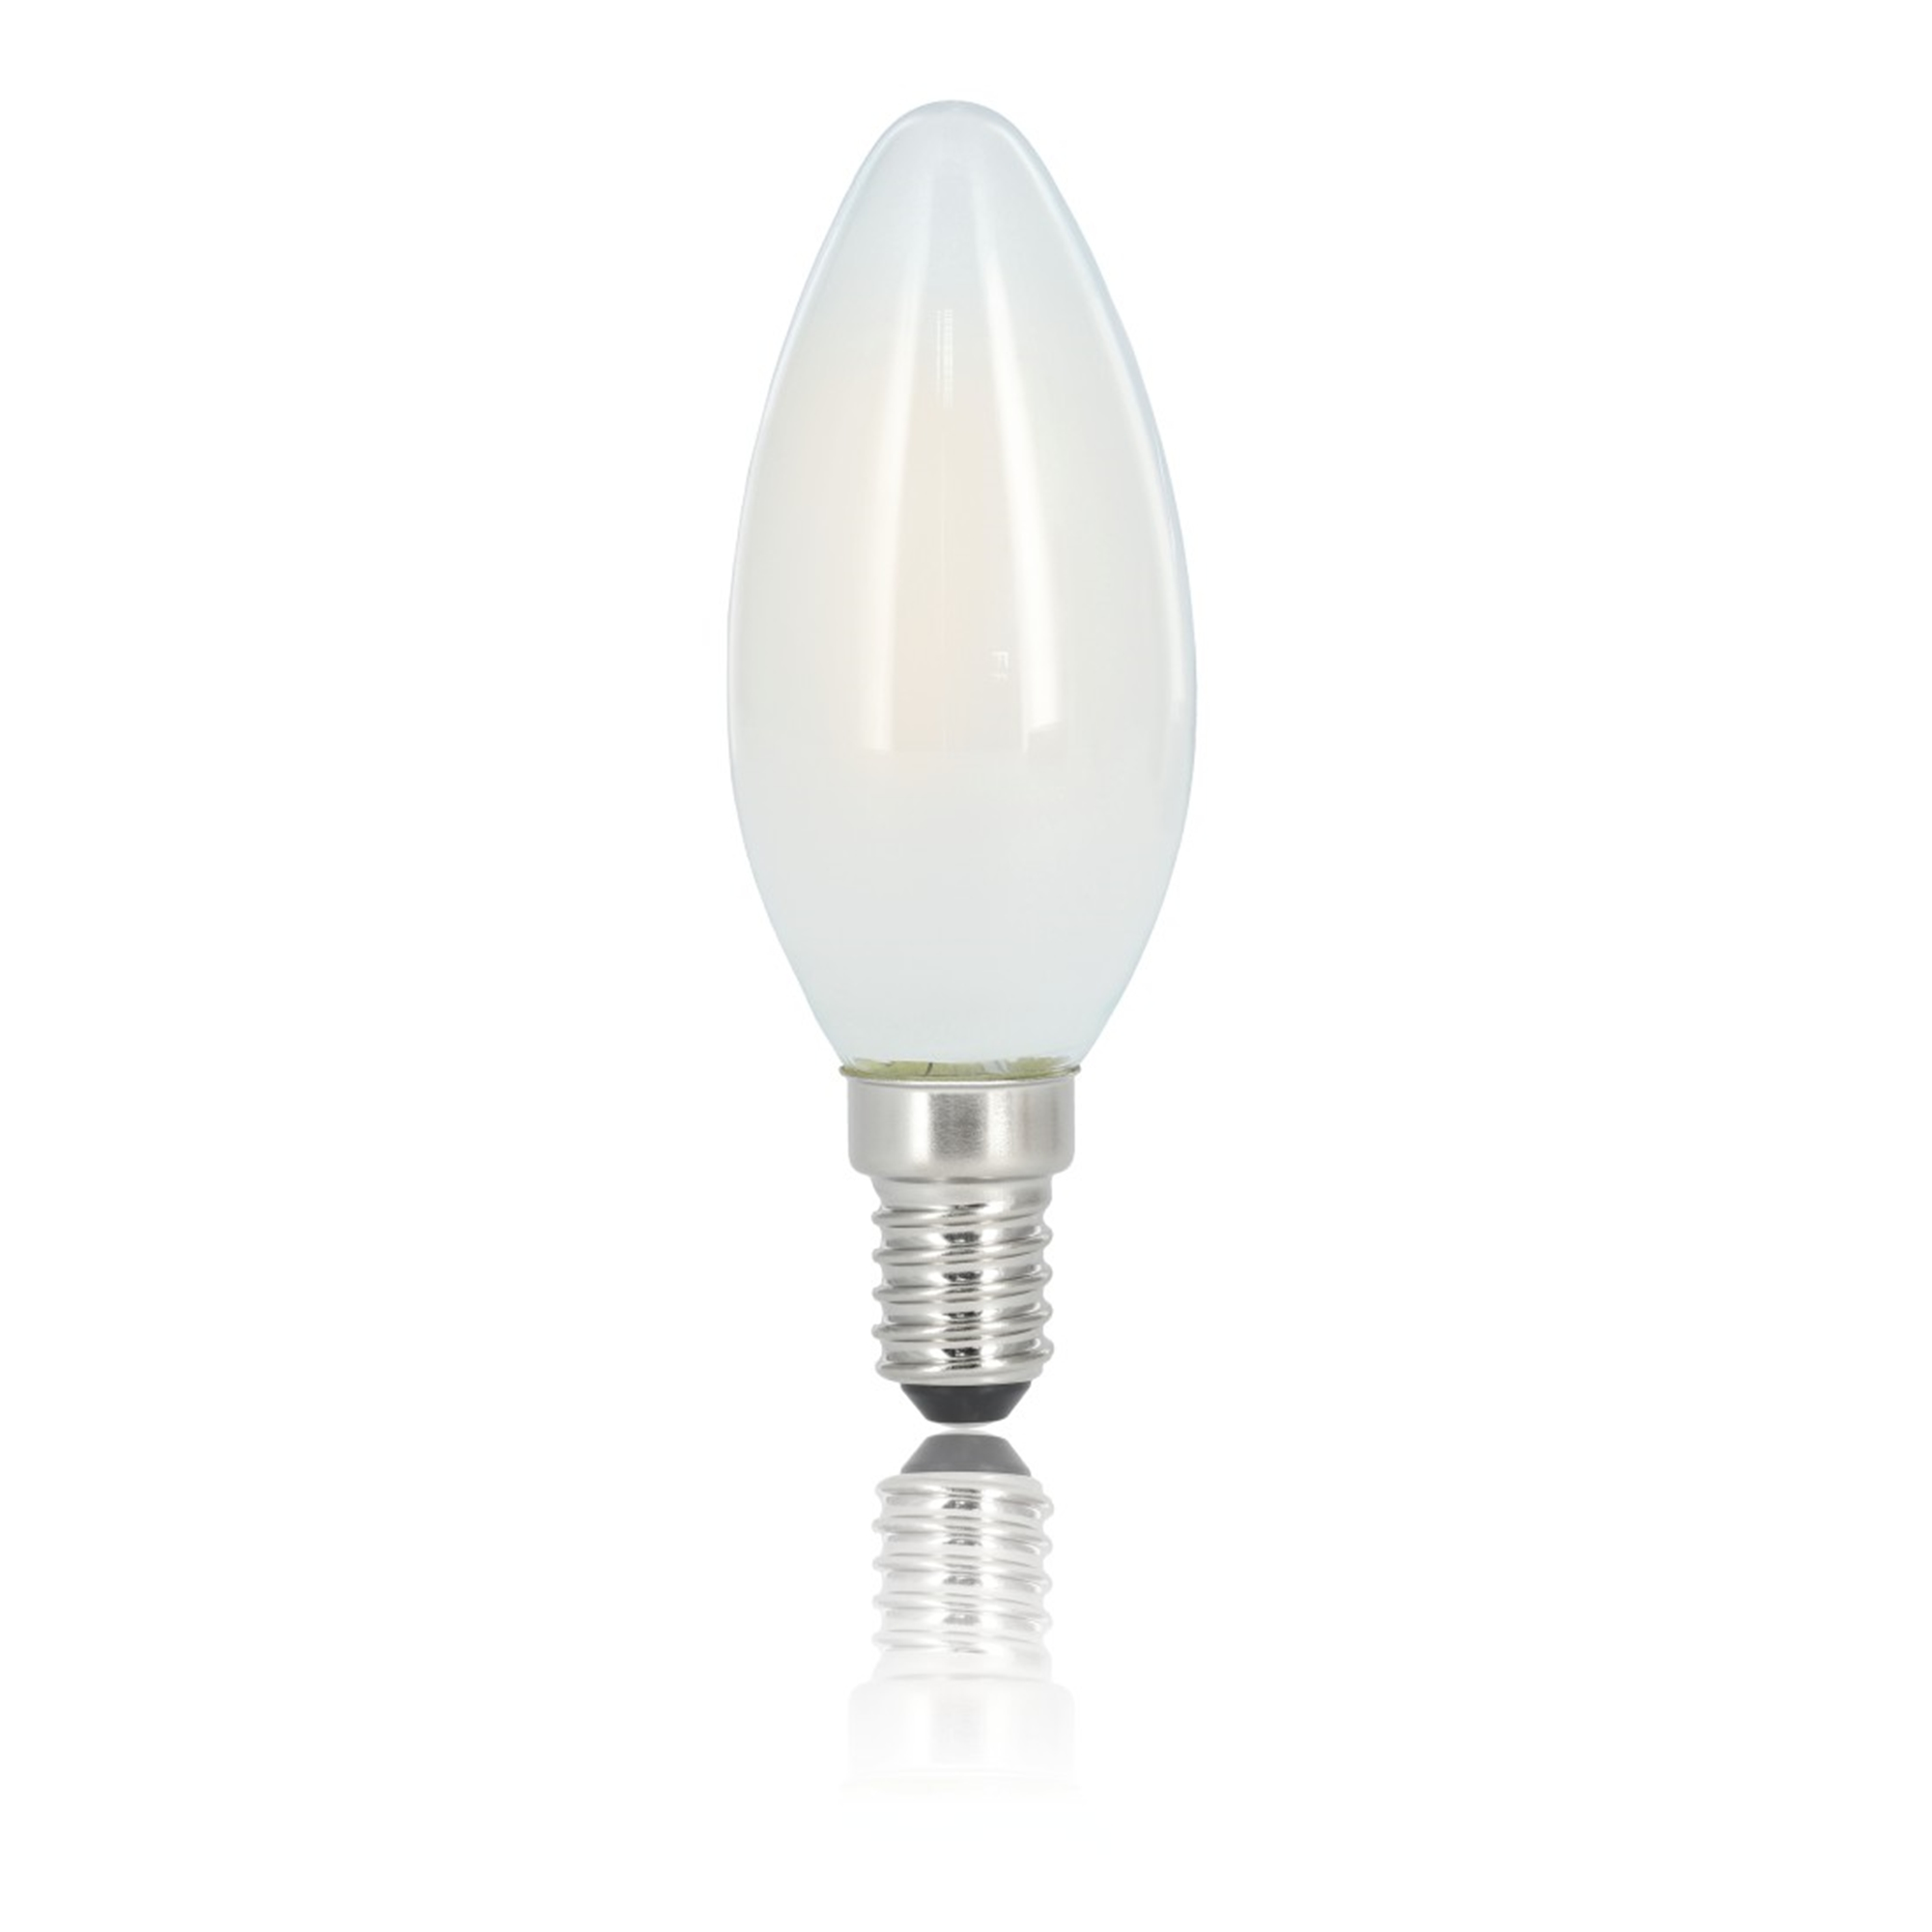 XAVAX 470lm Warmweiß E14 ersetzt 40W LED-Lampe E14,